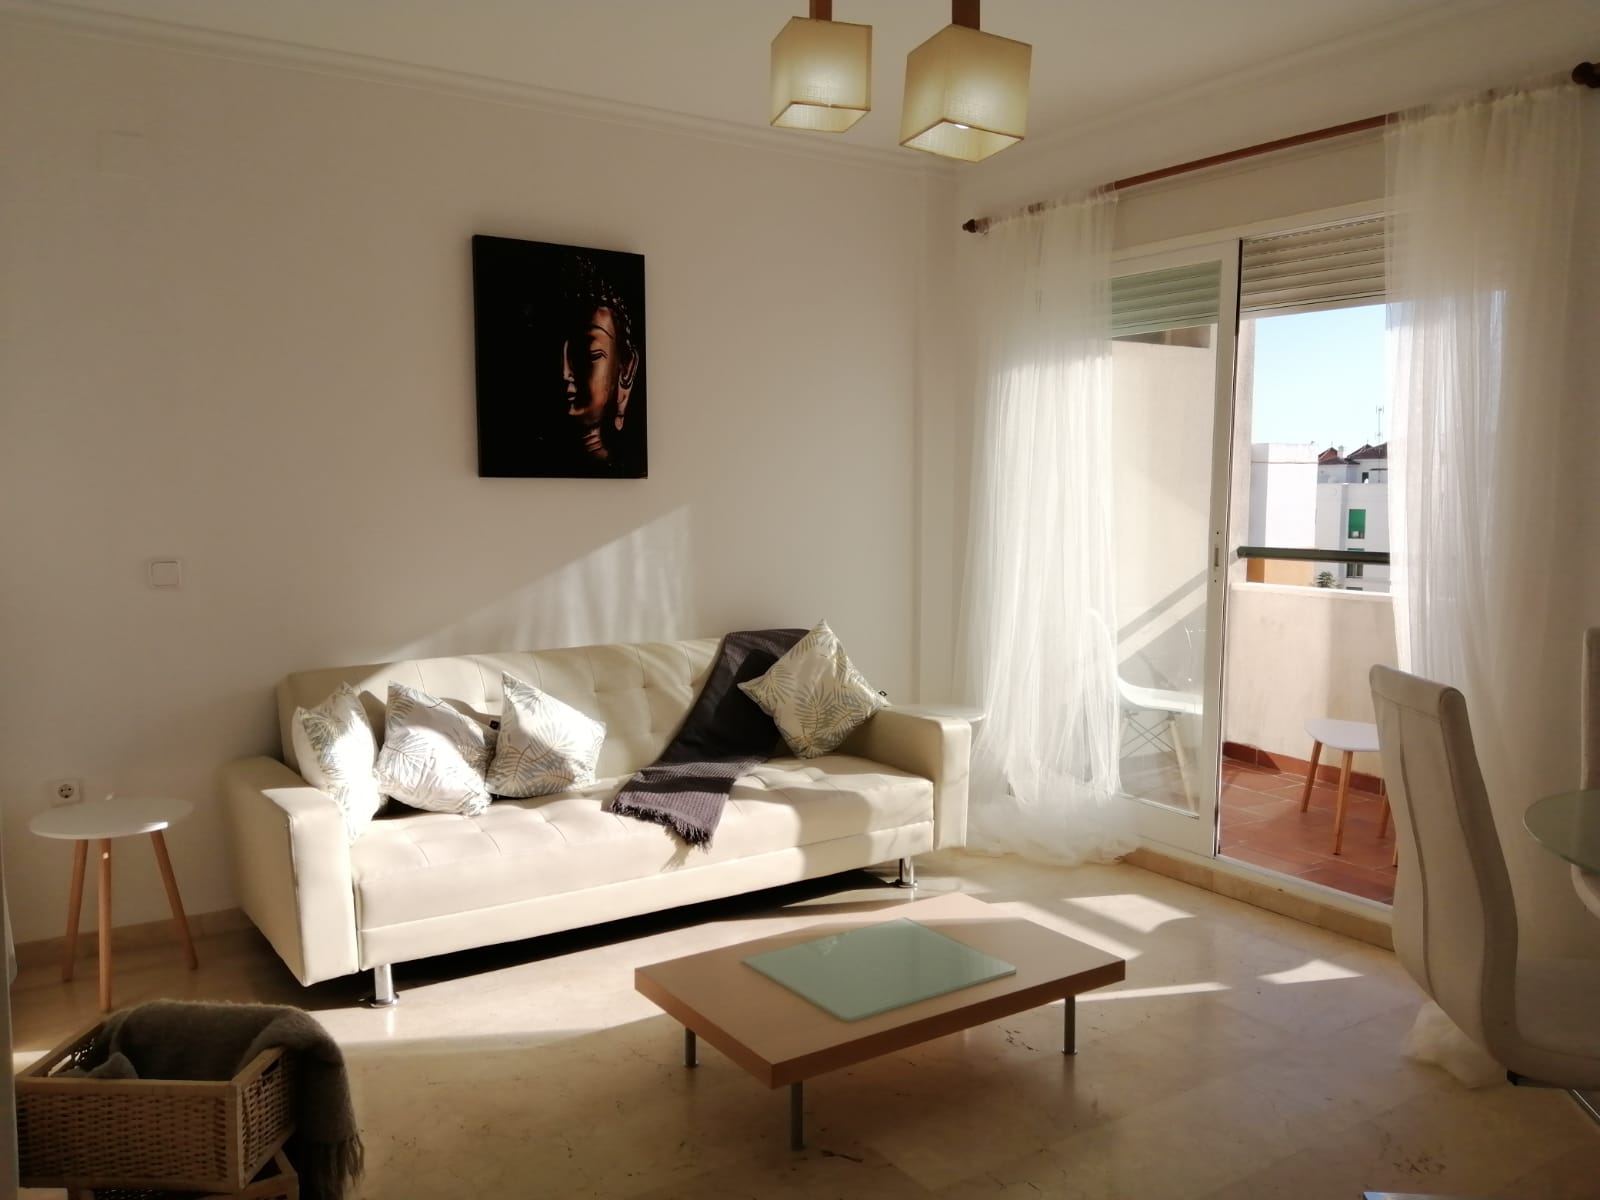 Apartamento de 1 dormitorio en alquiler cerca del puerto de Estepona - mibgroup.es